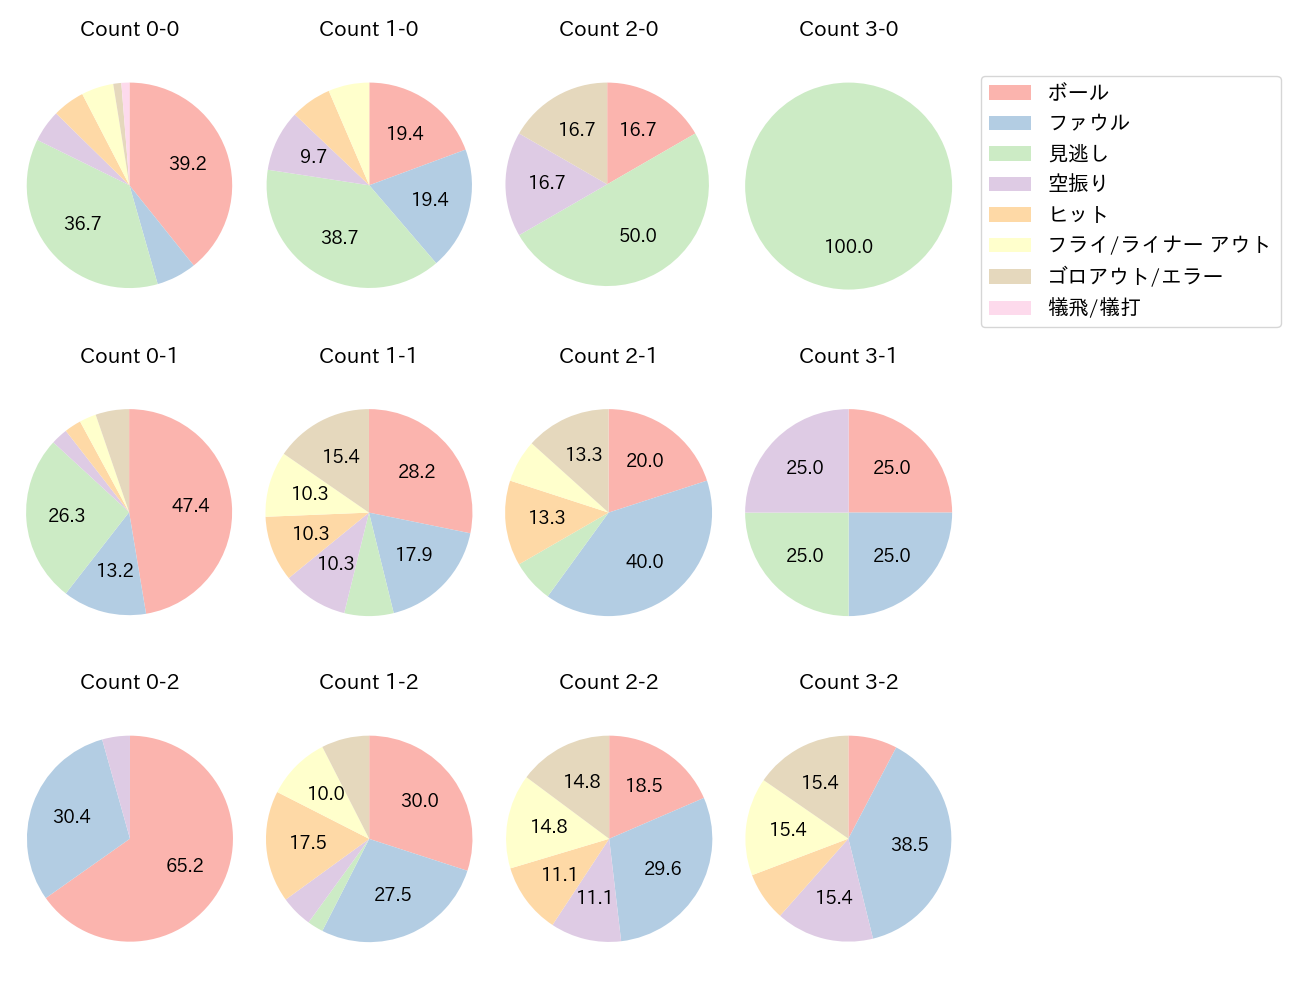 吉川 尚輝の球数分布(2022年9月)